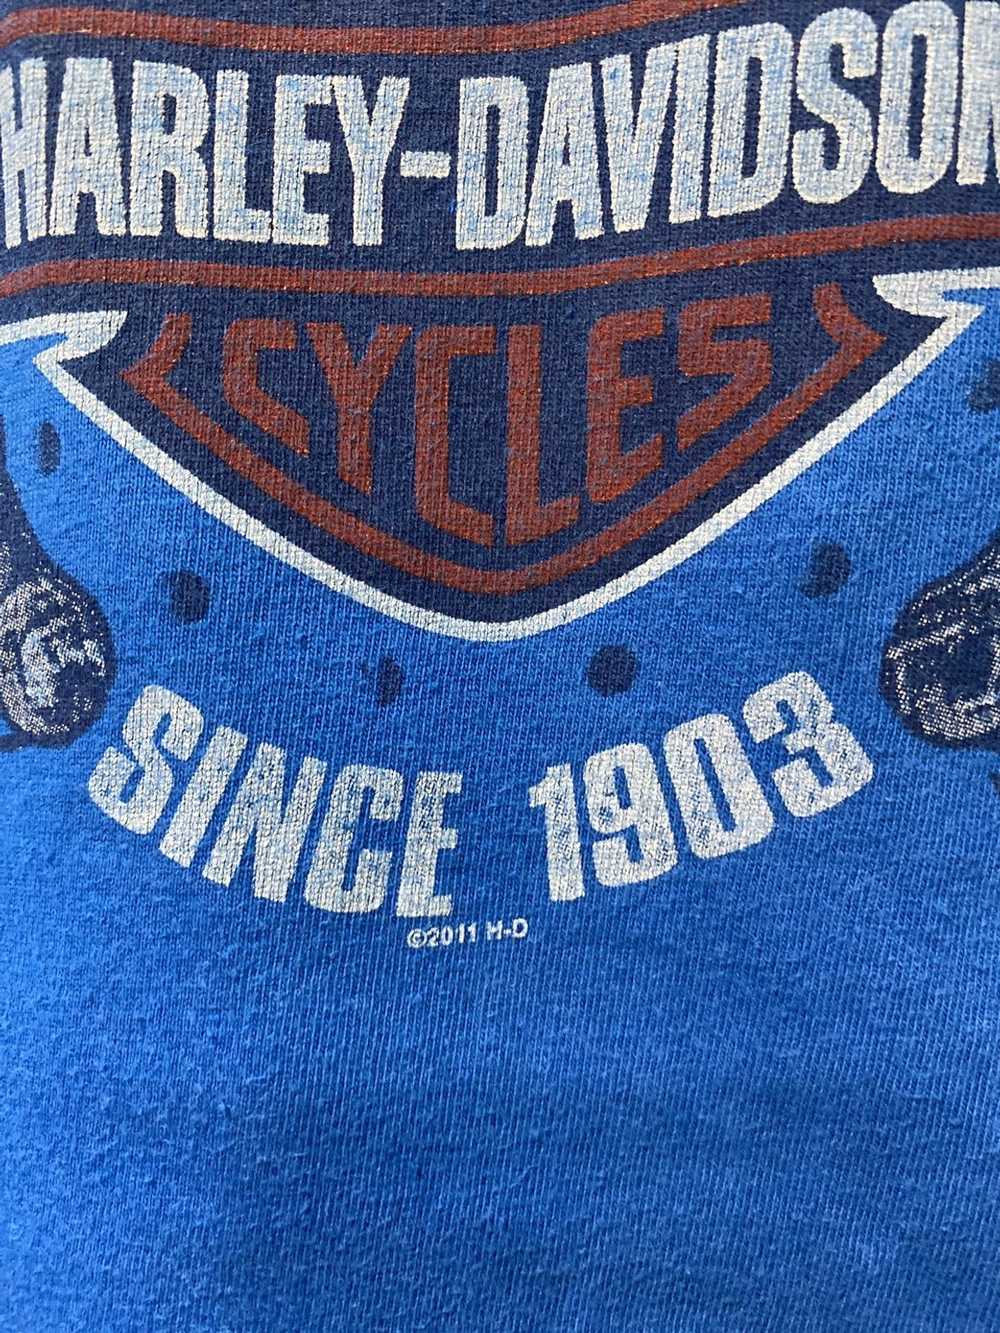 Harley Davidson Vintage Harley Davidson Tee - image 3